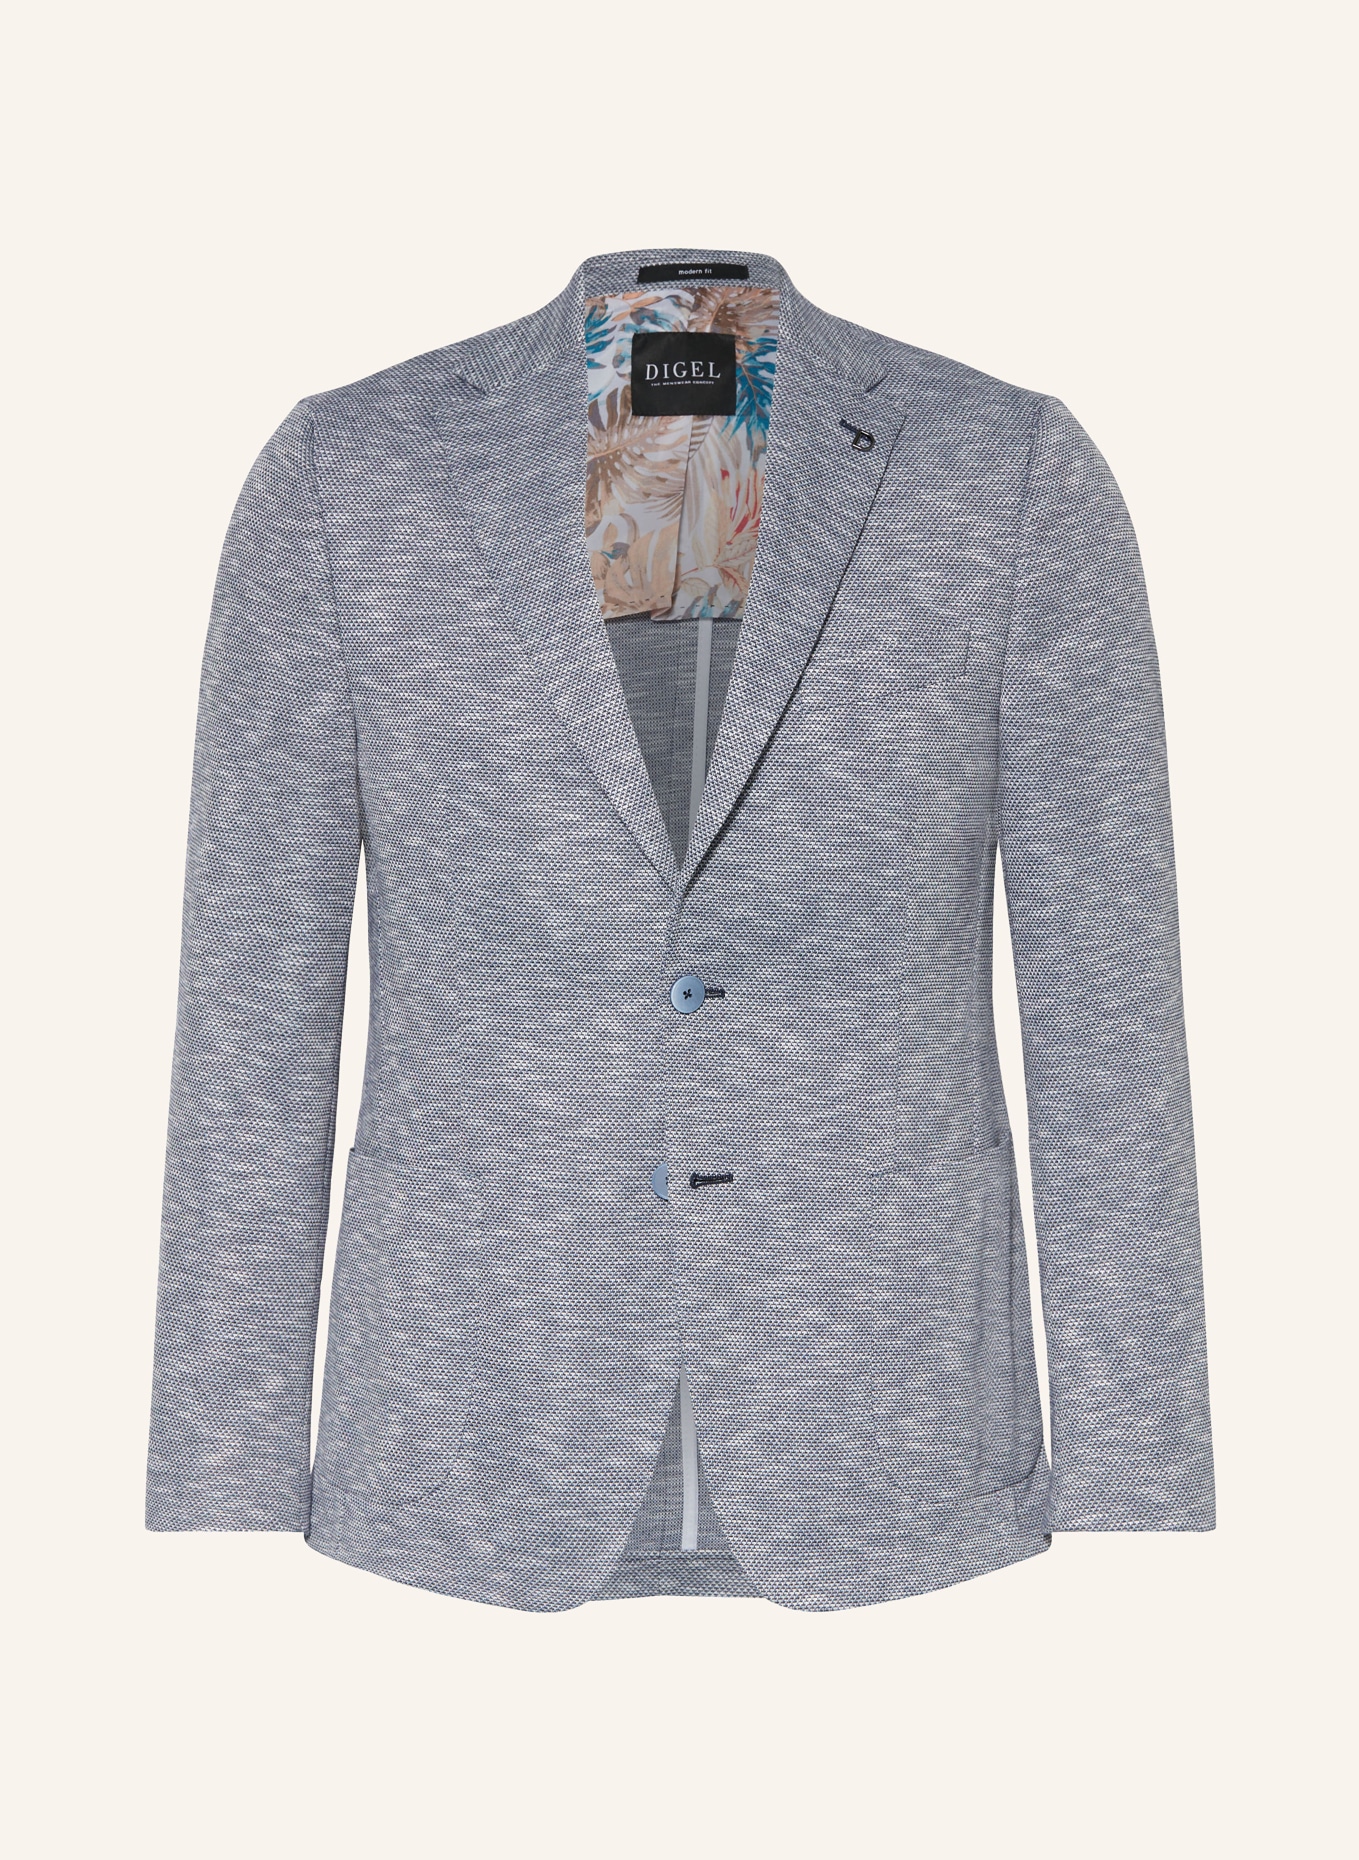 DIGEL Jersey jacket EDWARD modern fit, Color: BLUE (Image 1)